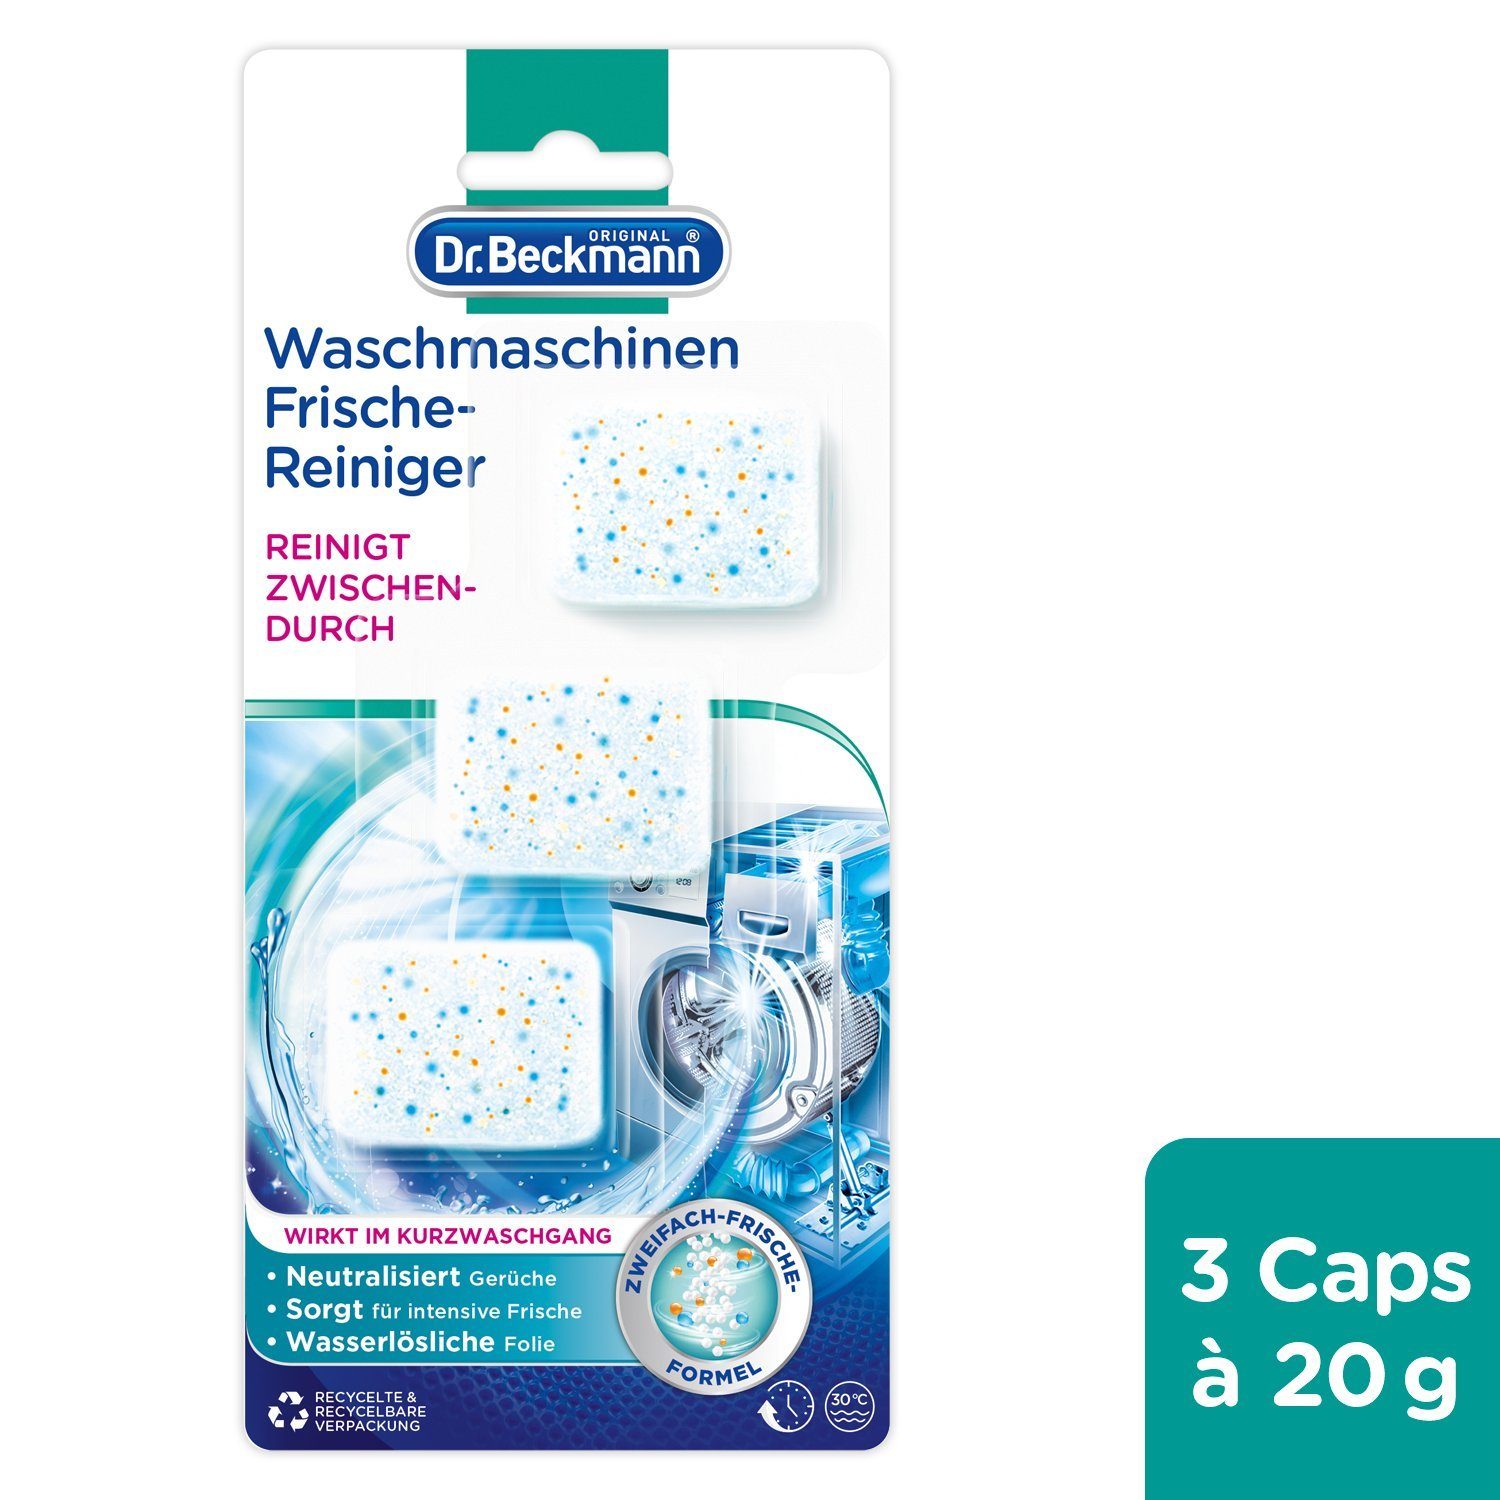 Dr. Beckmann Waschmaschinen Frische-Reiniger, Maschinenreiniger, 3x 20 g Waschmaschinenpflege